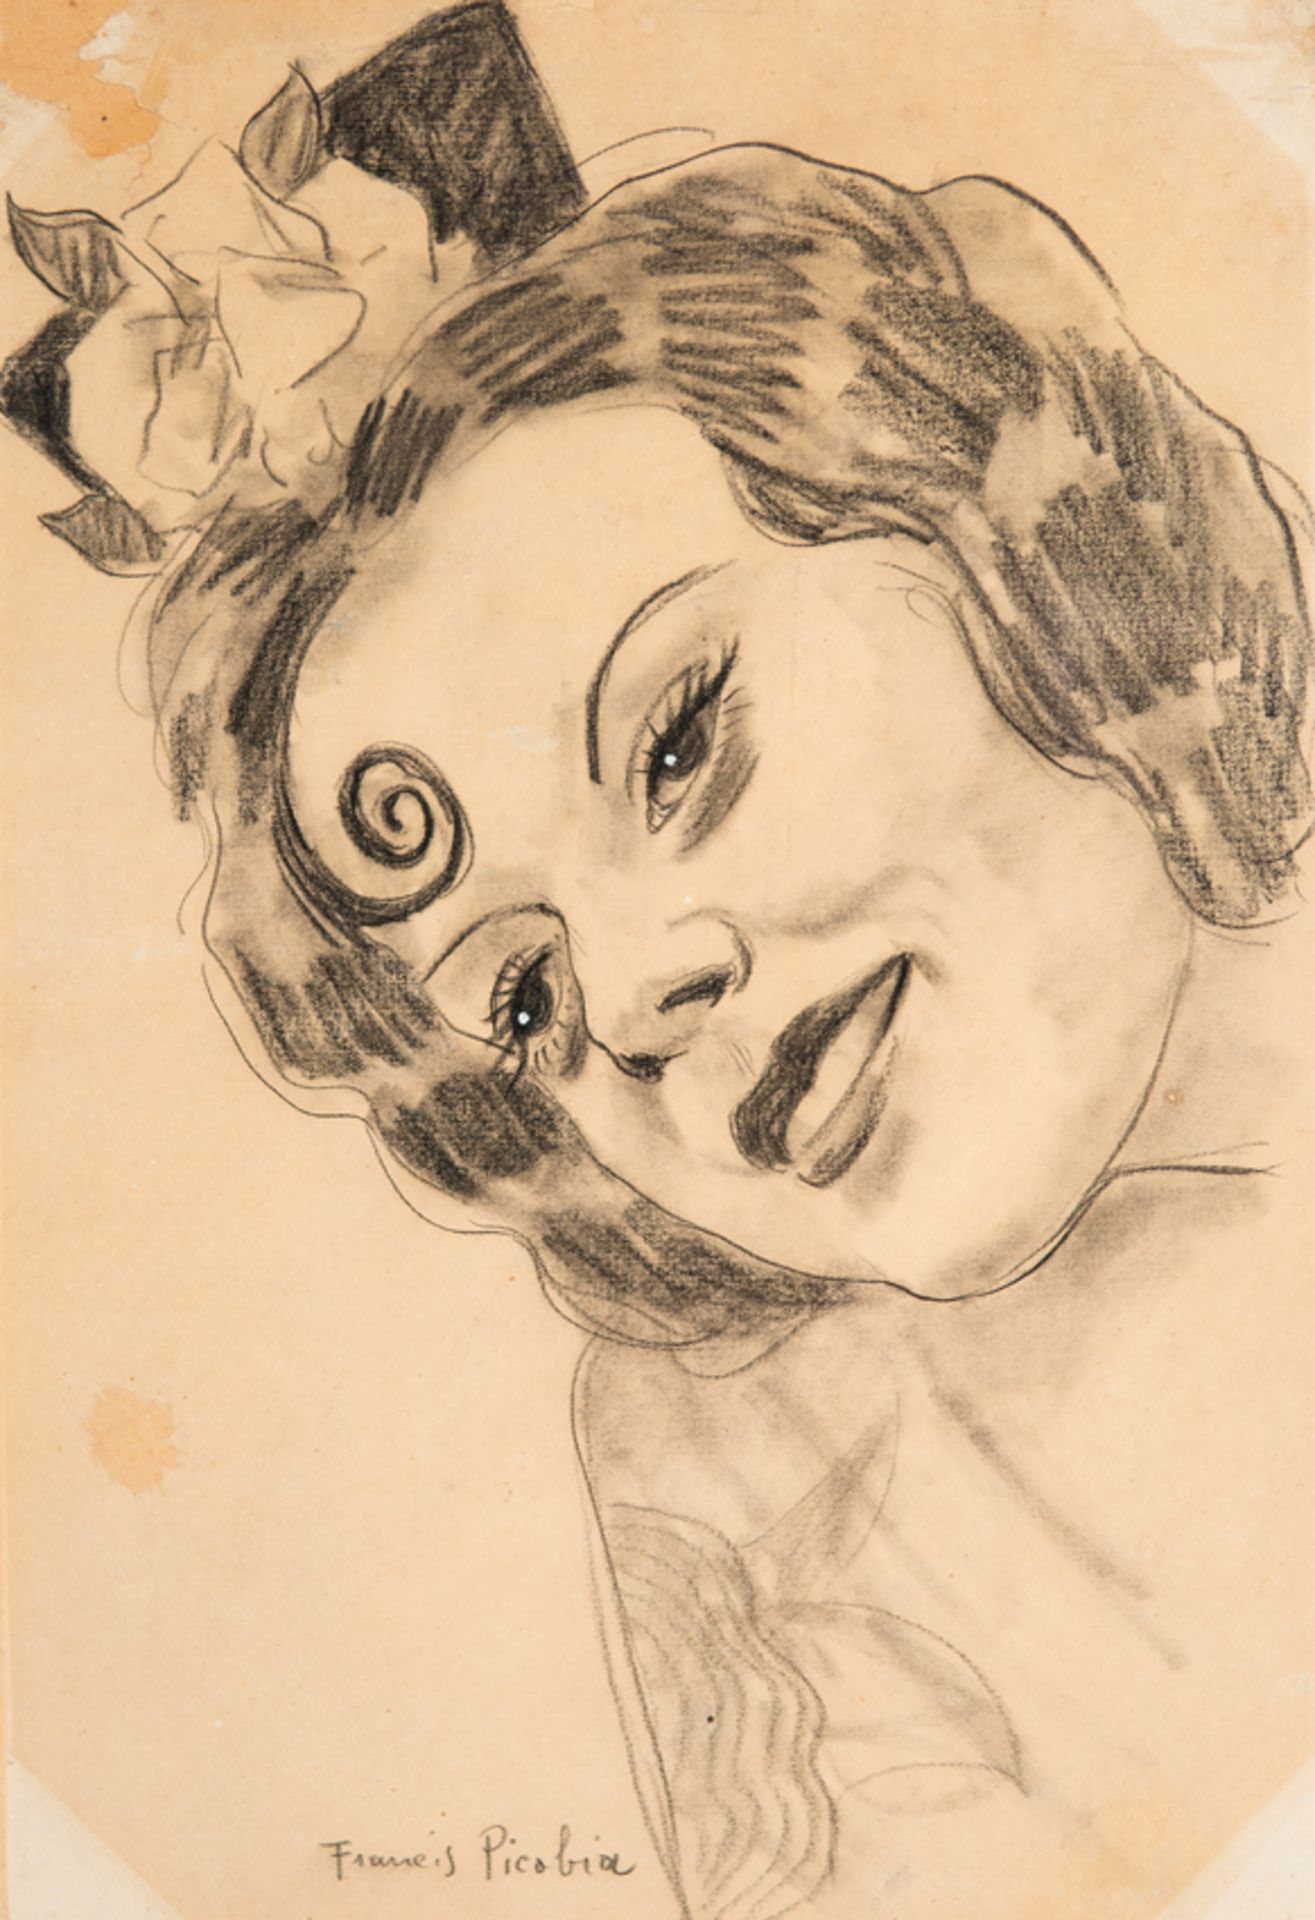 Francis Picabia (Paris, France, 1879 - 1953)